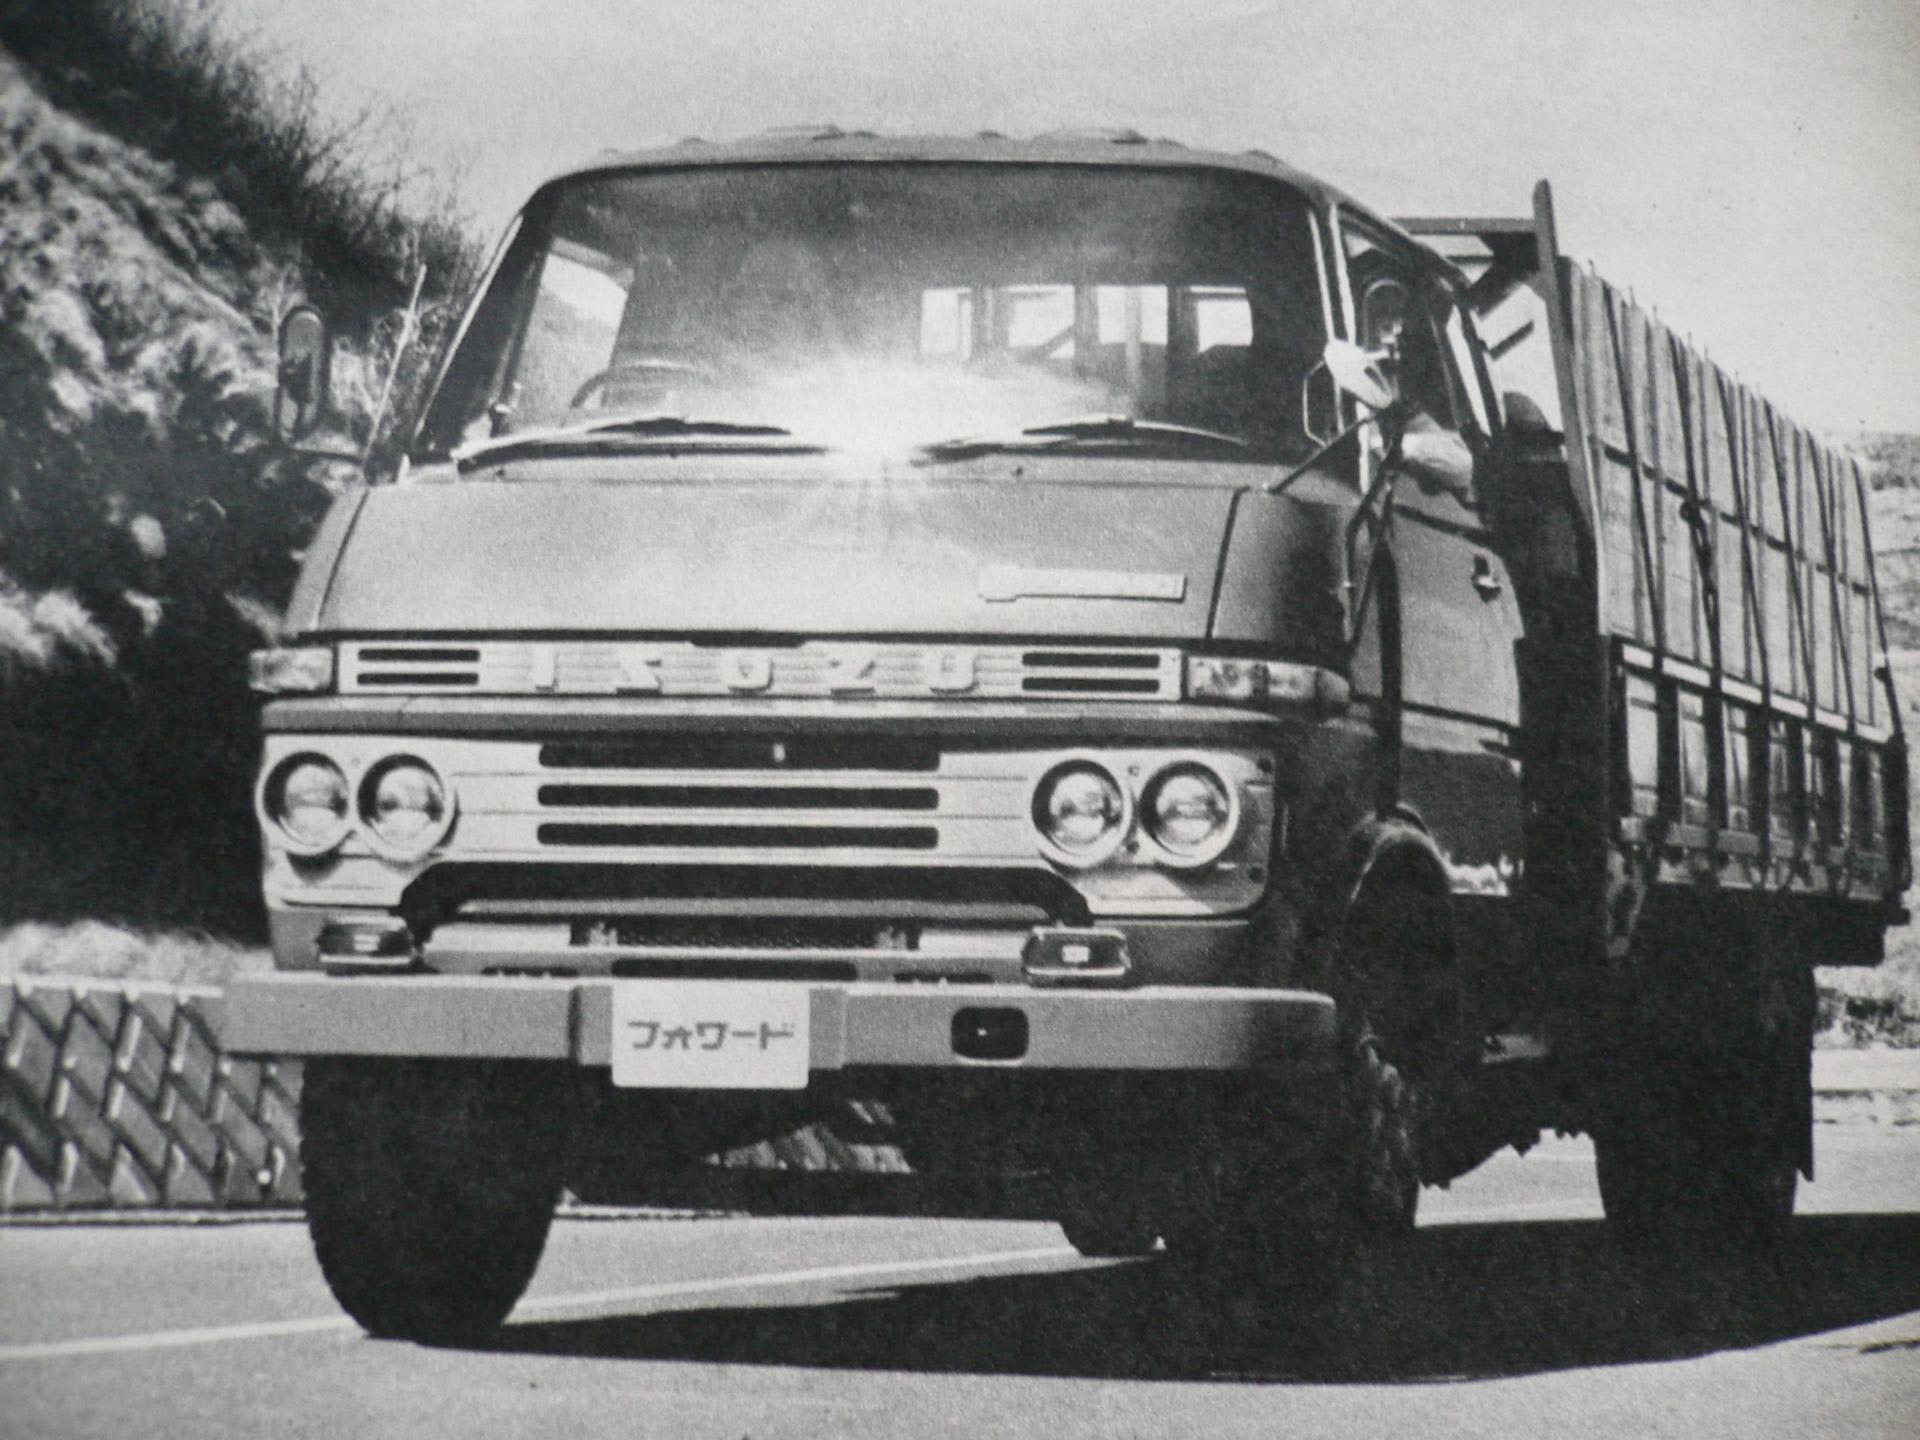 70年代的日本尼桑卡车图片